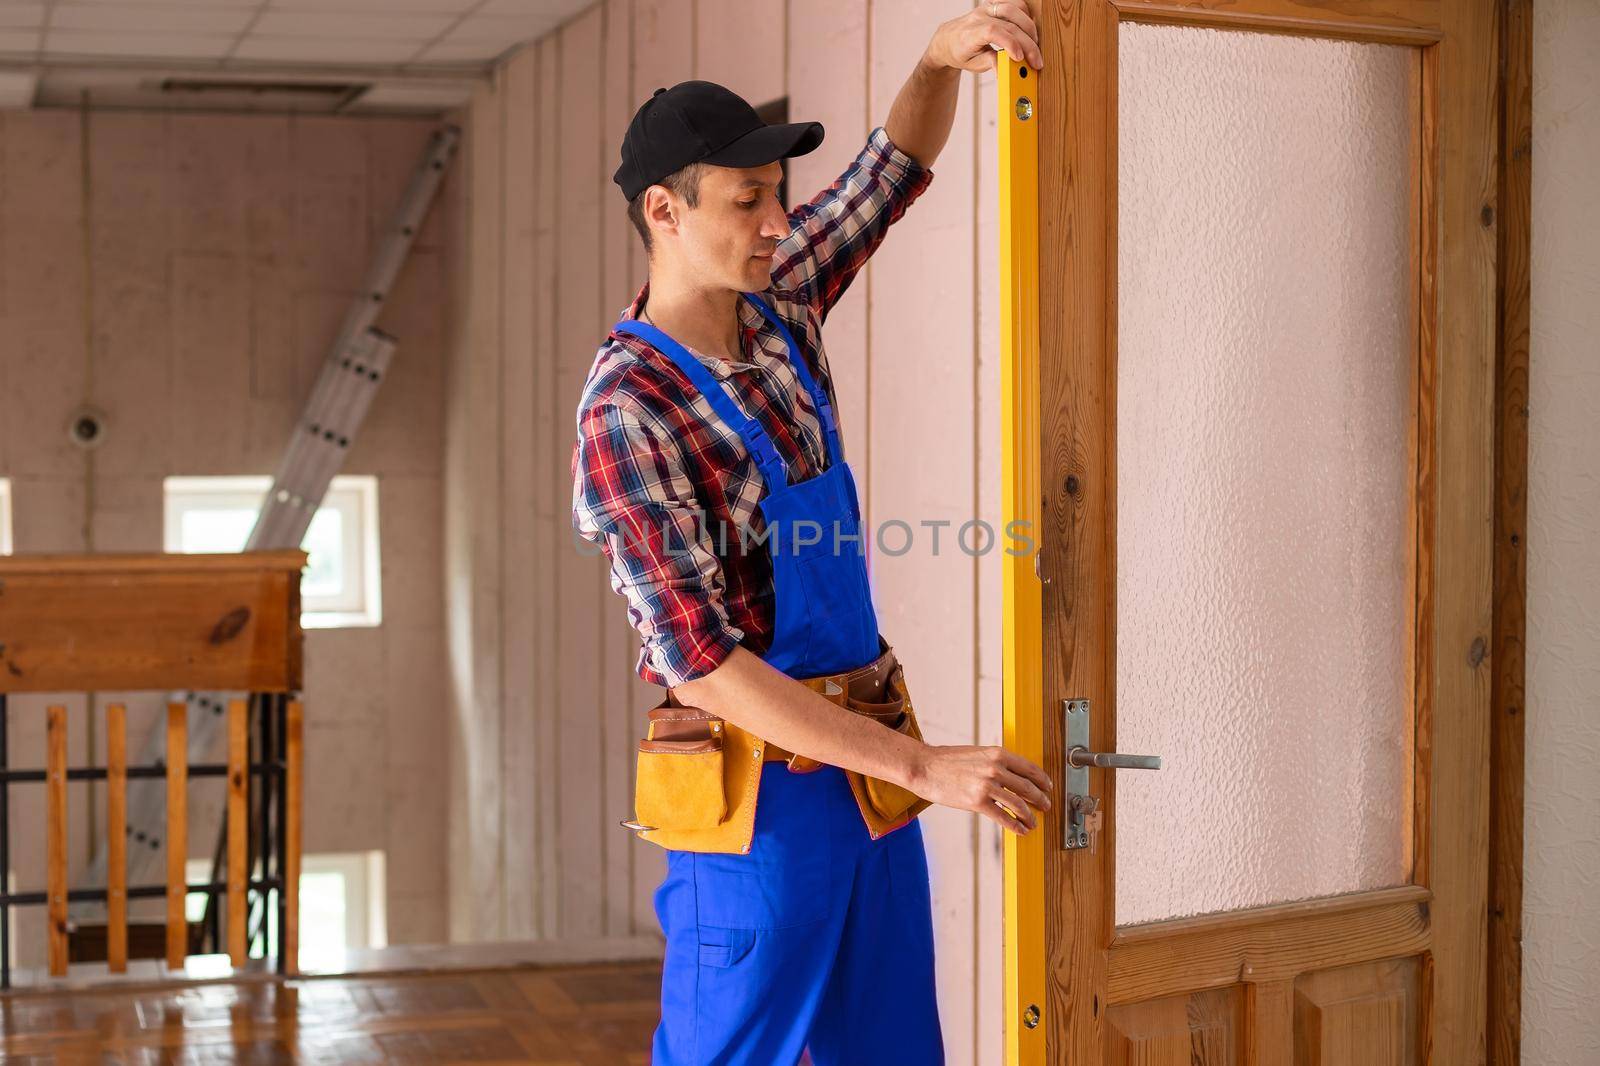 handyman repair the door lock in the room.